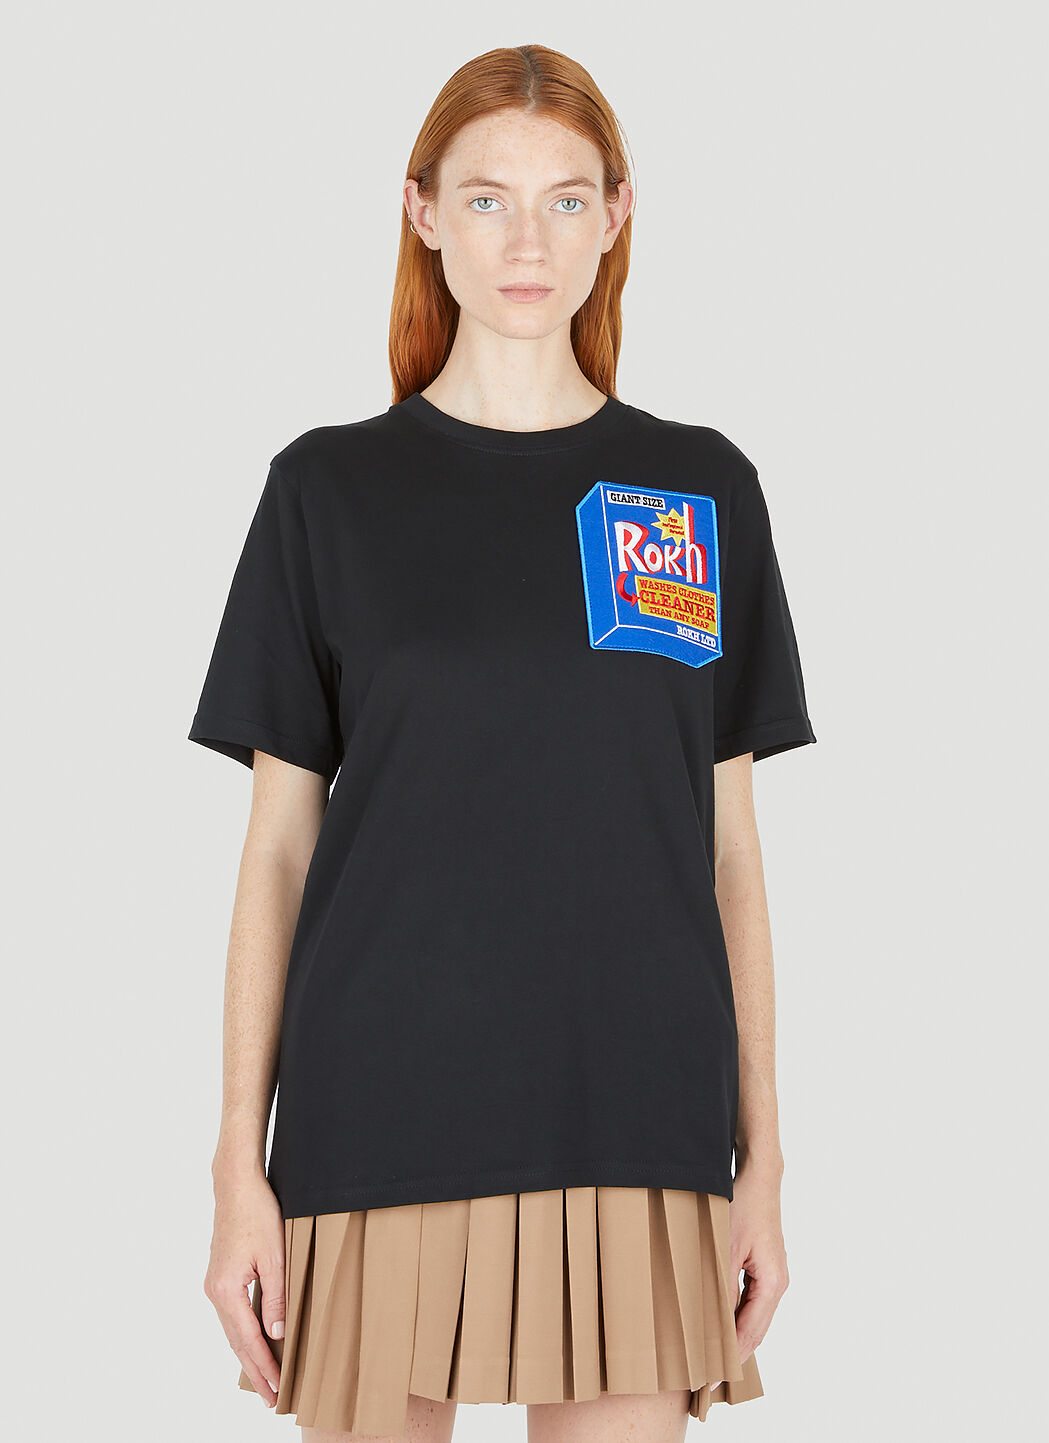 Rokh 디터전트 티셔츠 블랙 rok0254003